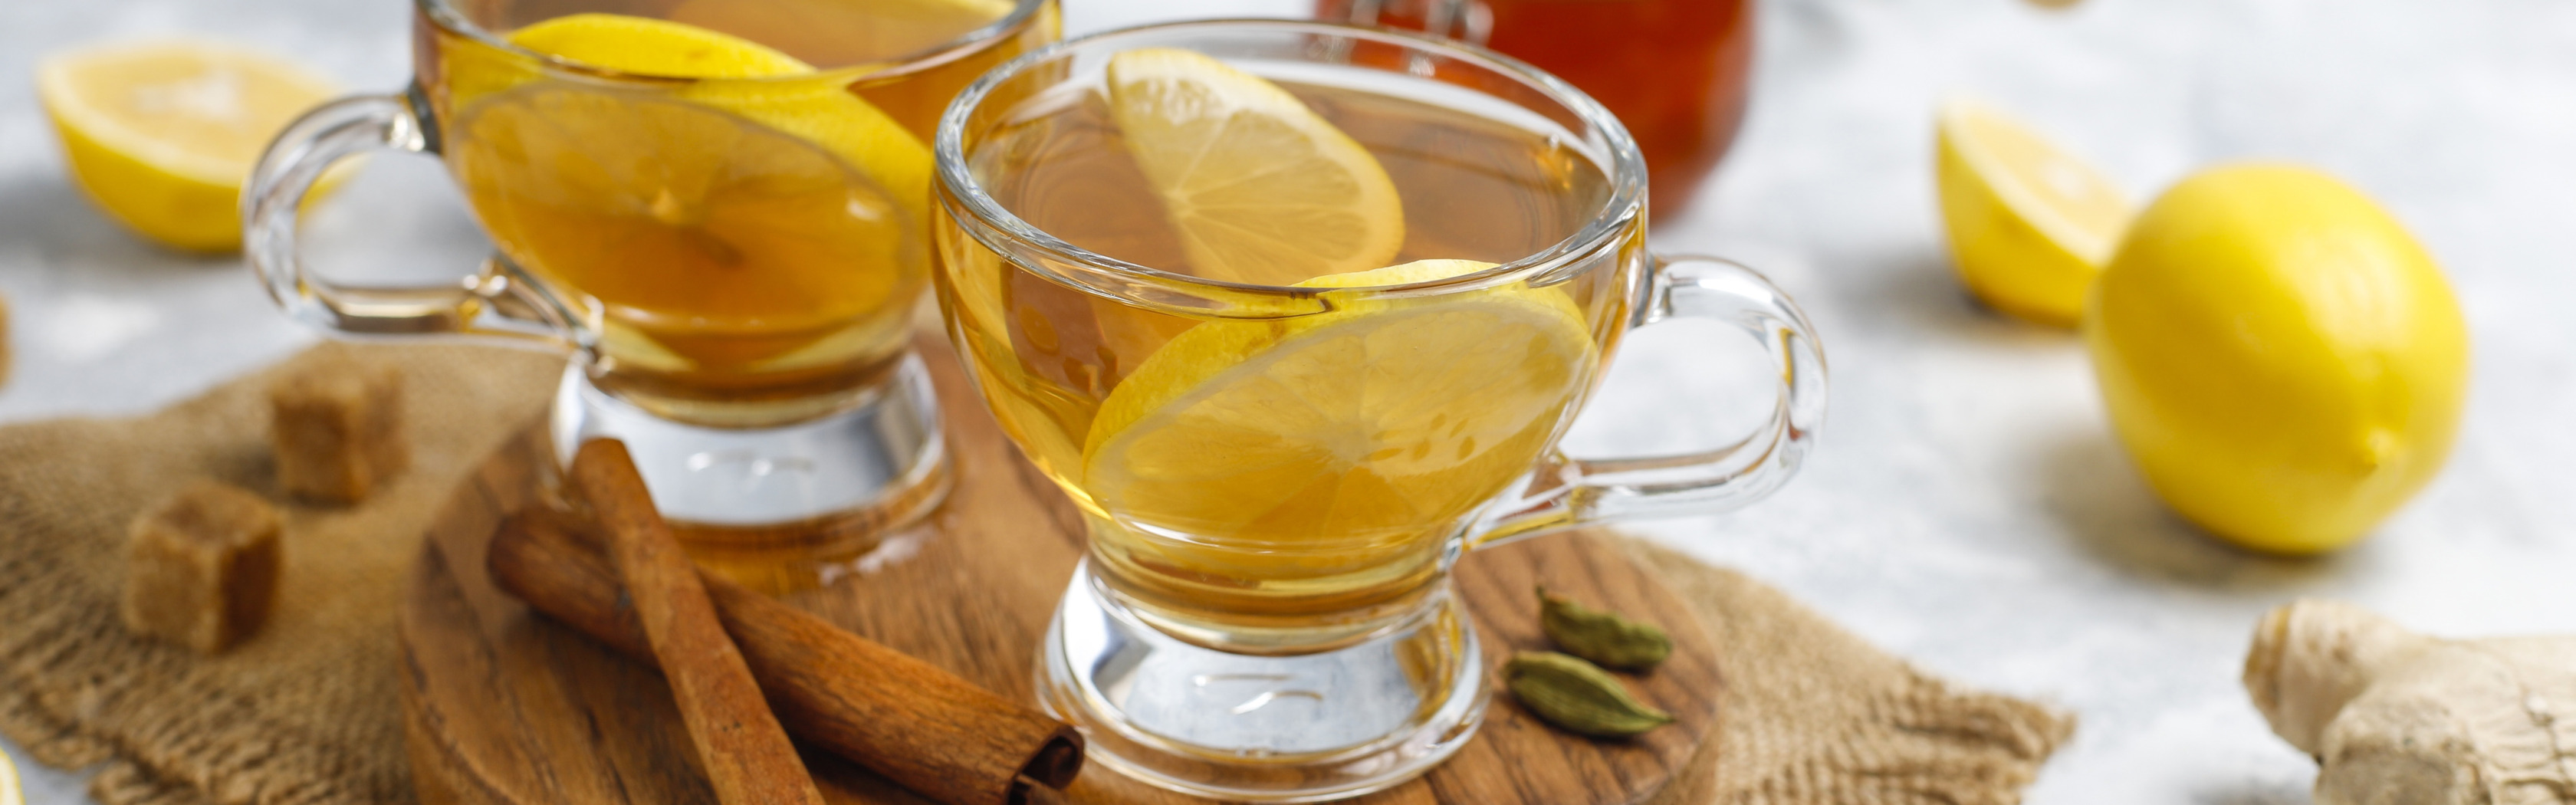 Лимон и корица пить. Мед в чашке. Полная чаша с медом. Крепкий алкоголь с медом и корицей. Лимон и корица напиток в банки.